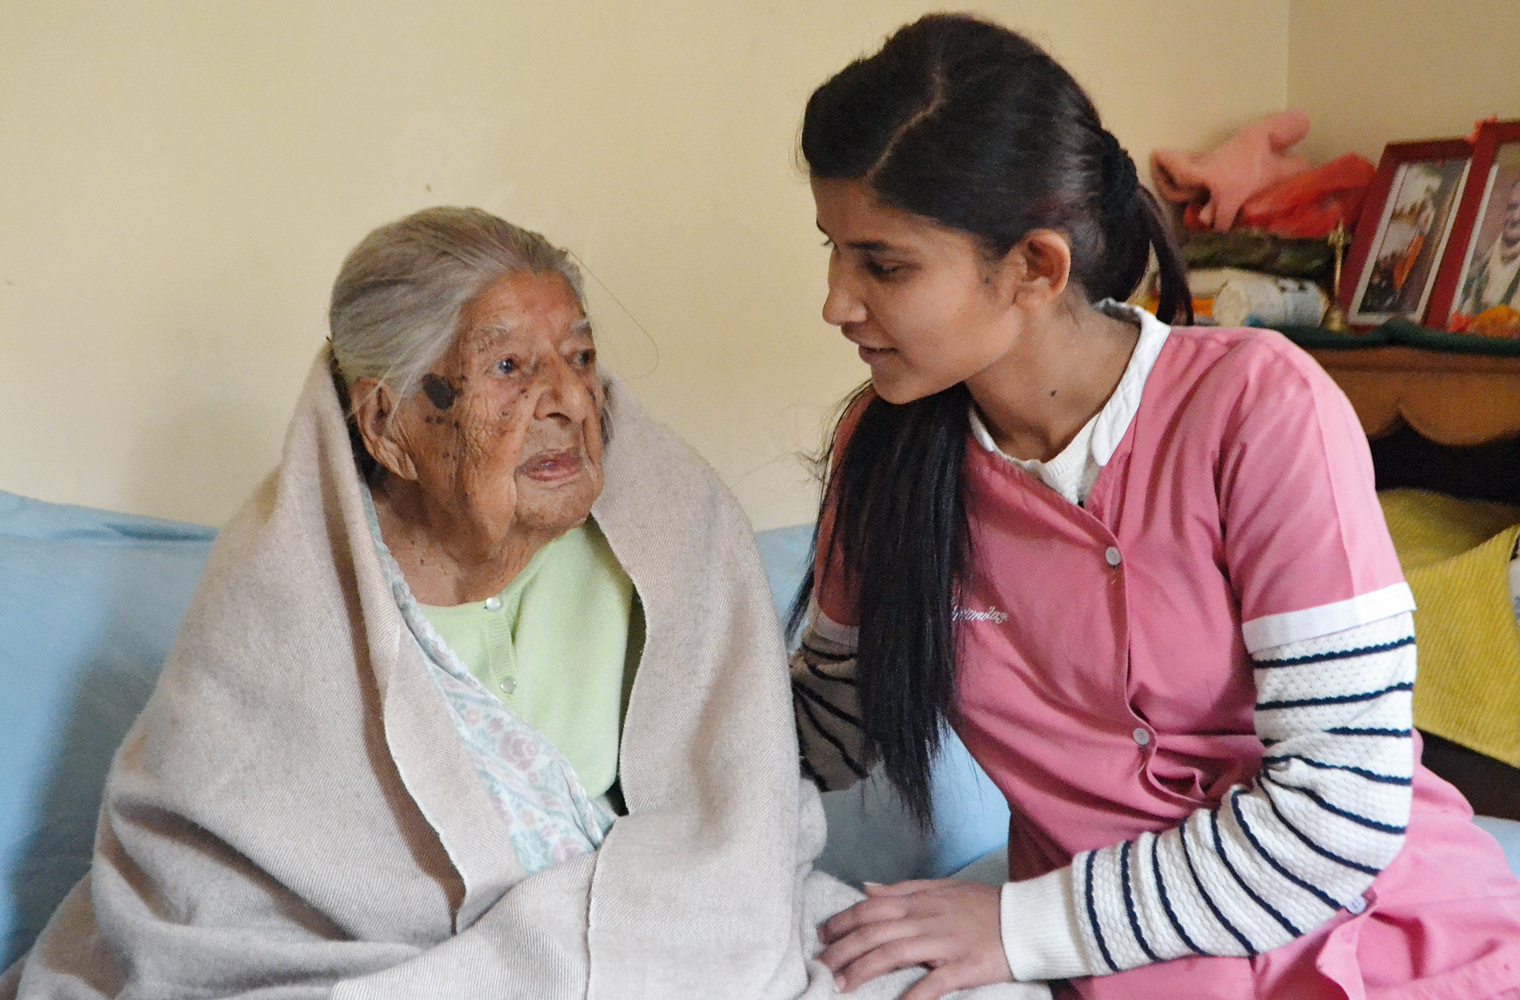 Lea Frei: Eine junge nepalesische Pflegerin sitzt neben einer älteren Frau, die in eine Decke eingehüllt ist, auf einer Couch und unterhält sich mi...